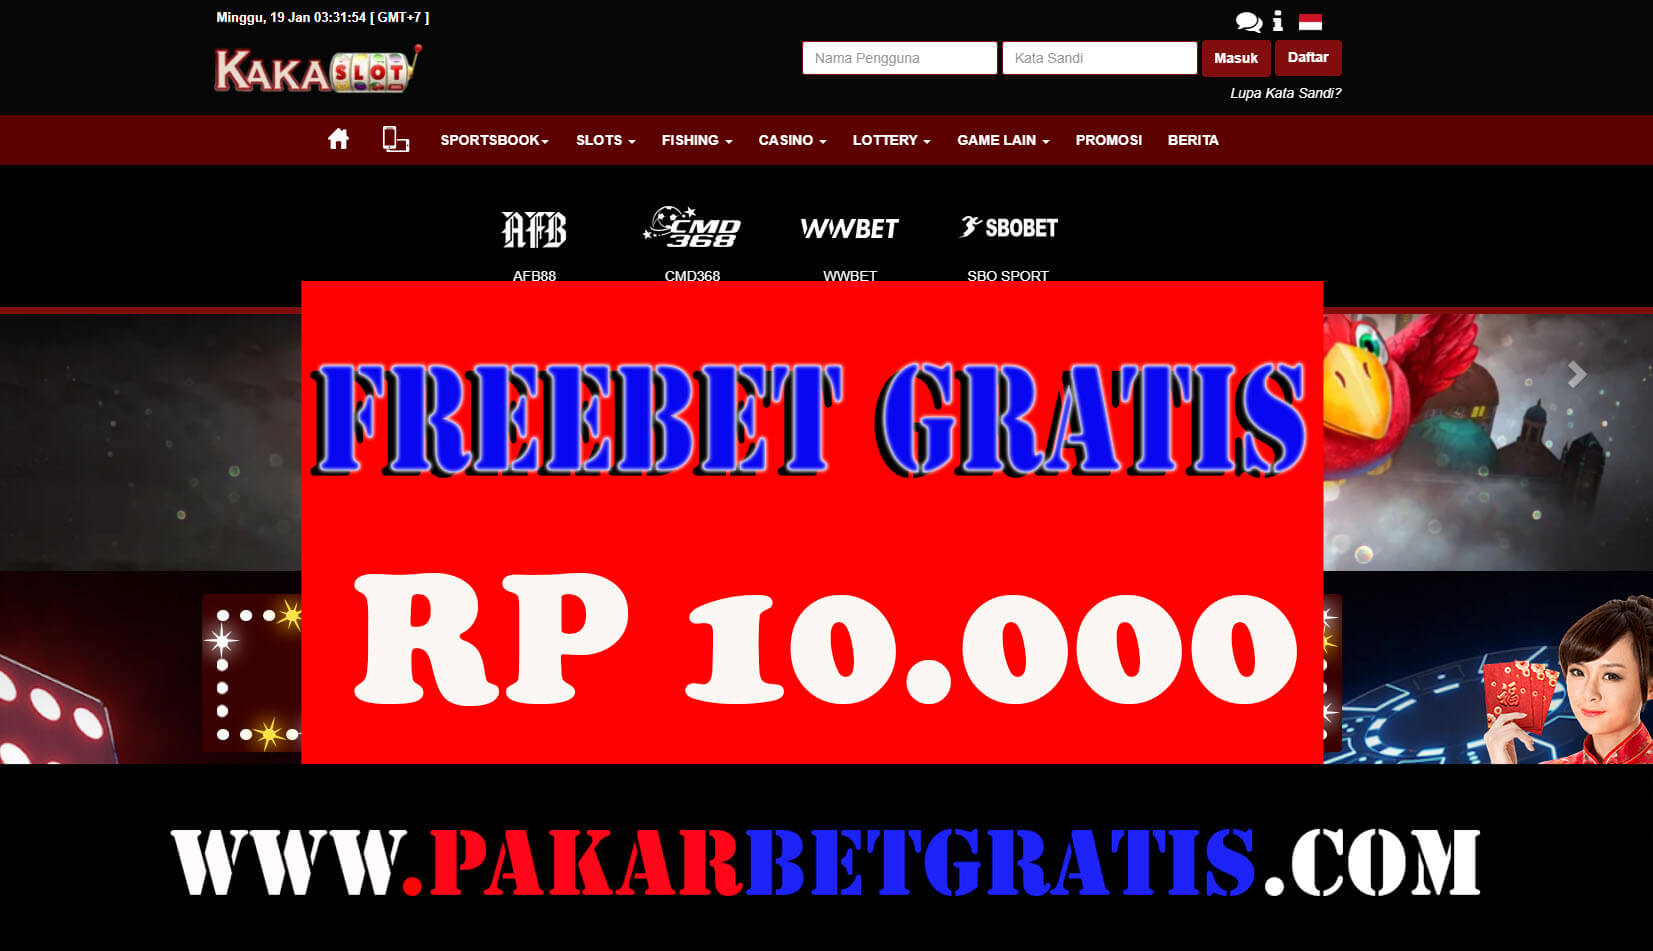 KAKASLOT Freebet Slot Gratis Rp 10.000 Tanpa Deposit